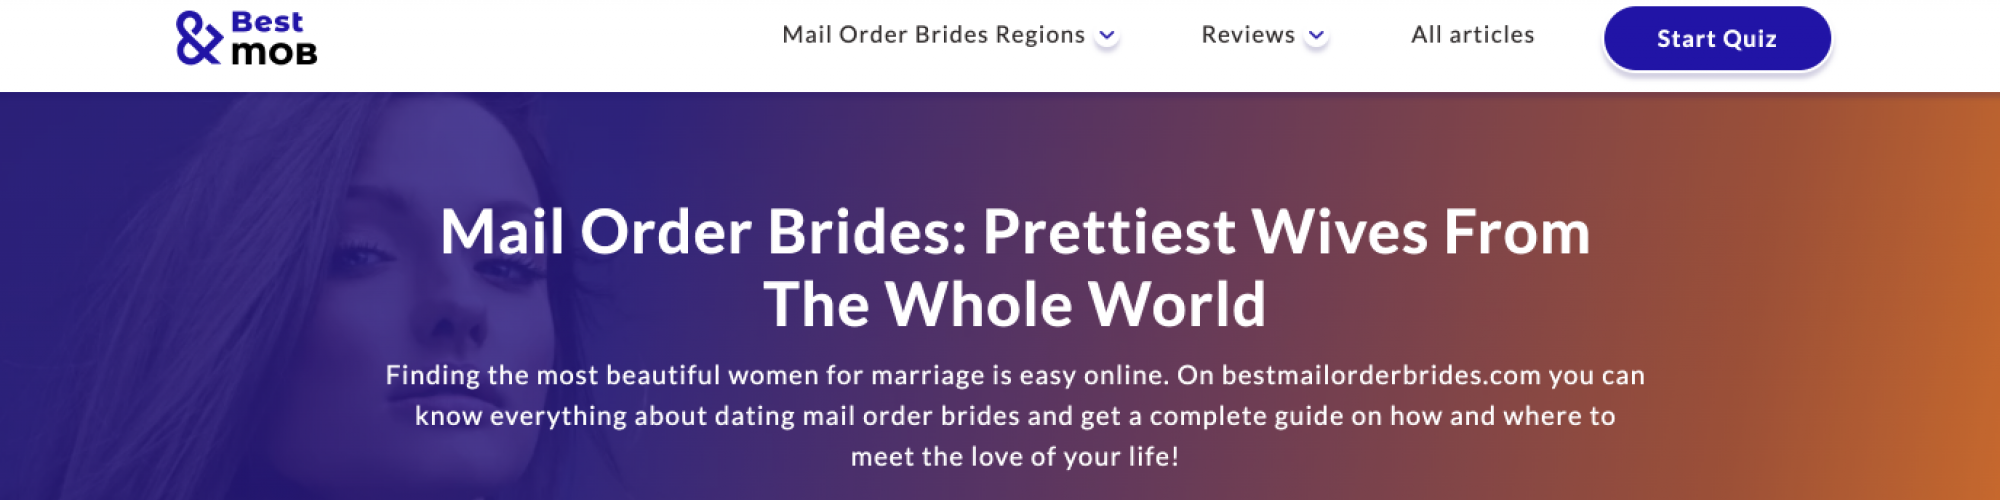 Best Mail Order Brides